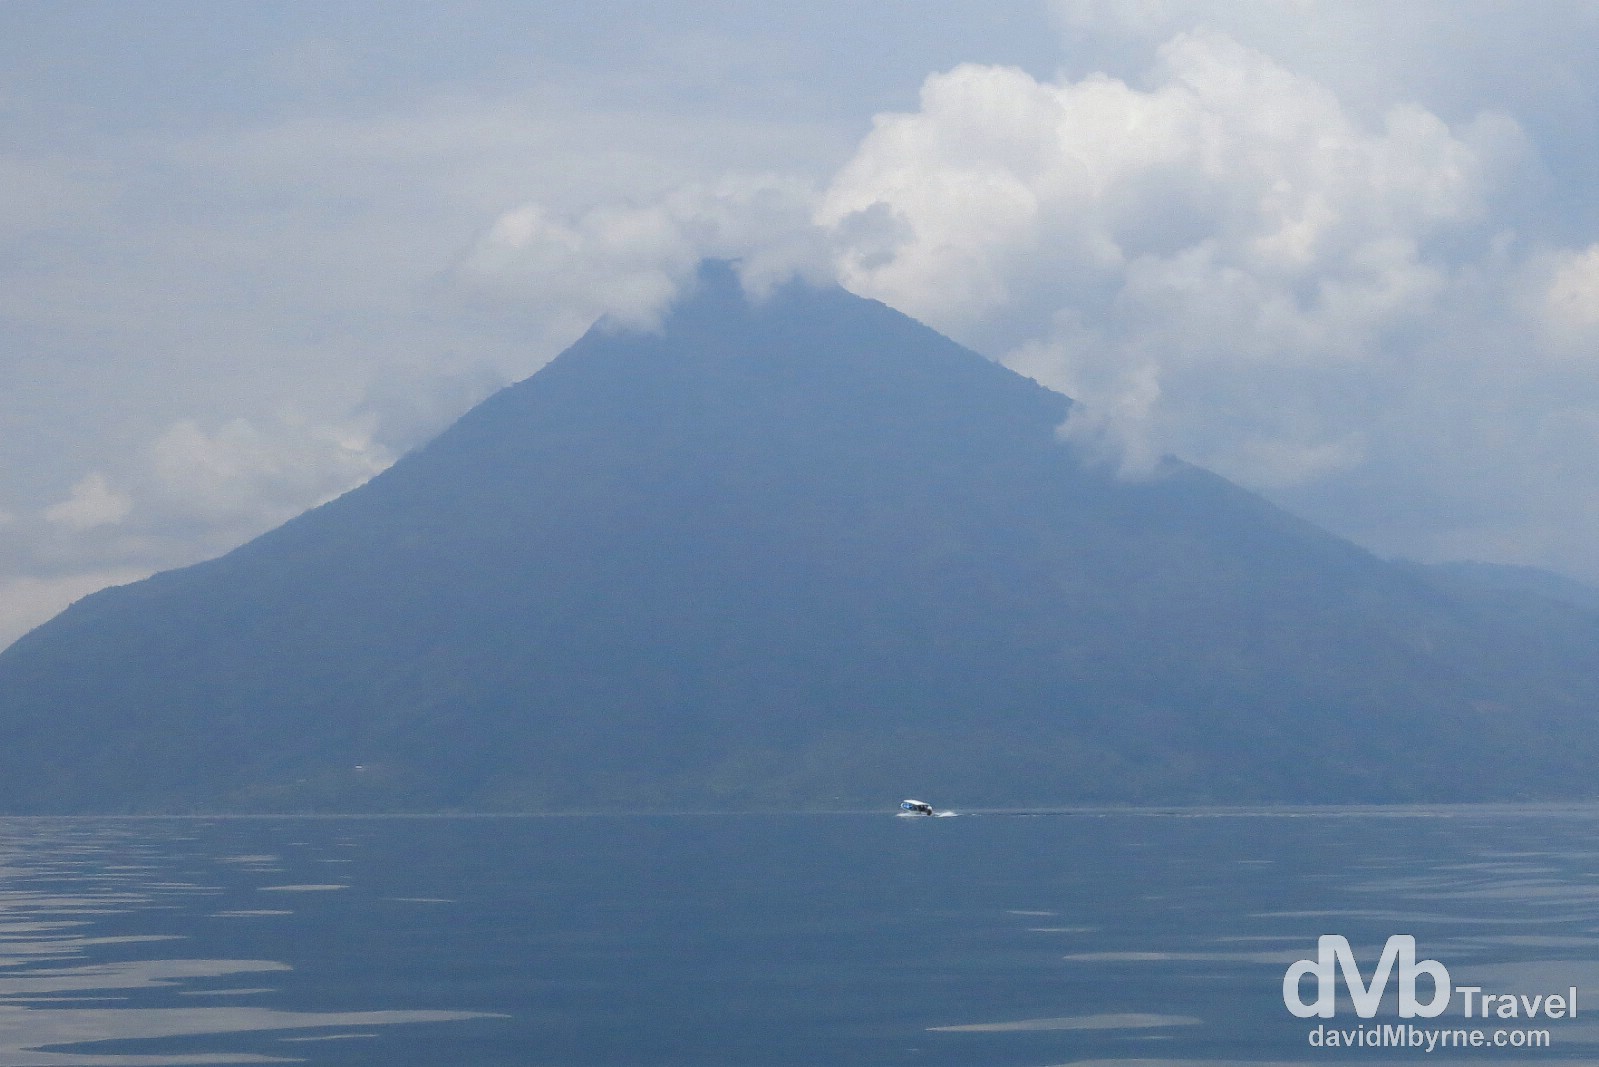 Boating near the base of the San Pedro Volcano on Lake Atitlan, Guatemala. May 24th 2013.